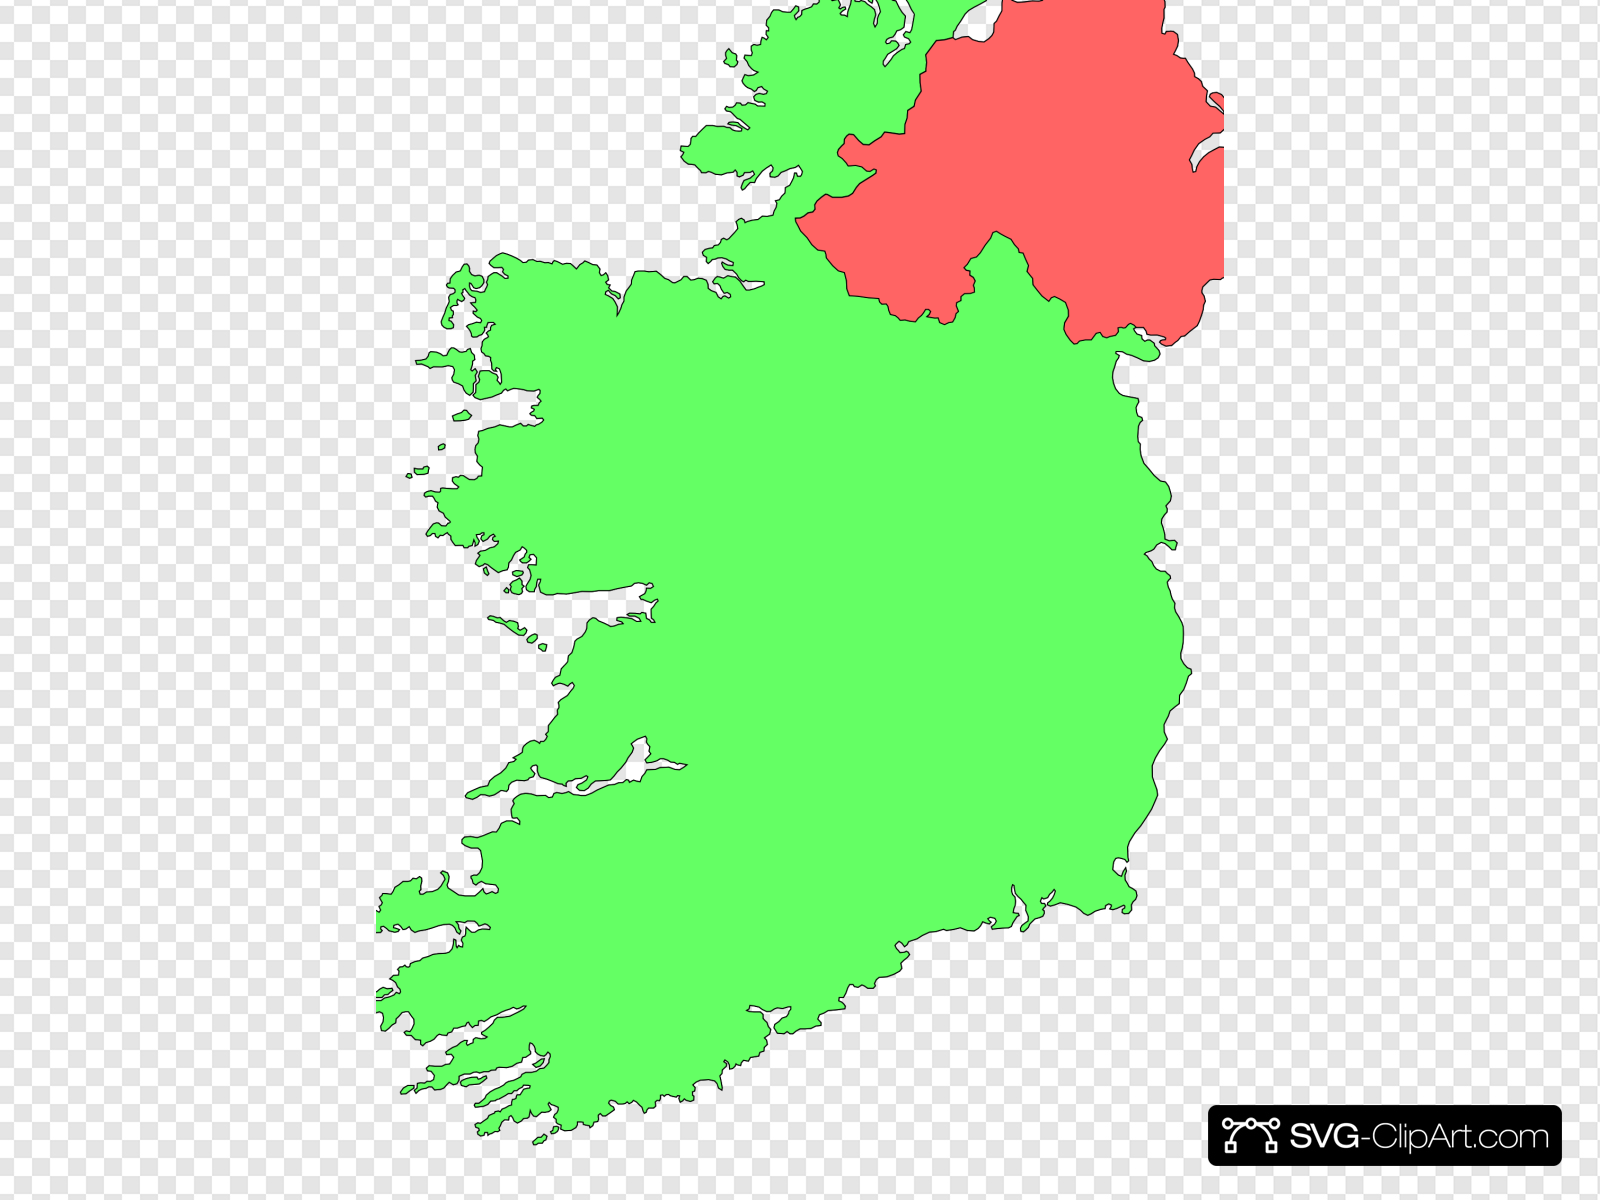 северная ирландия на карте